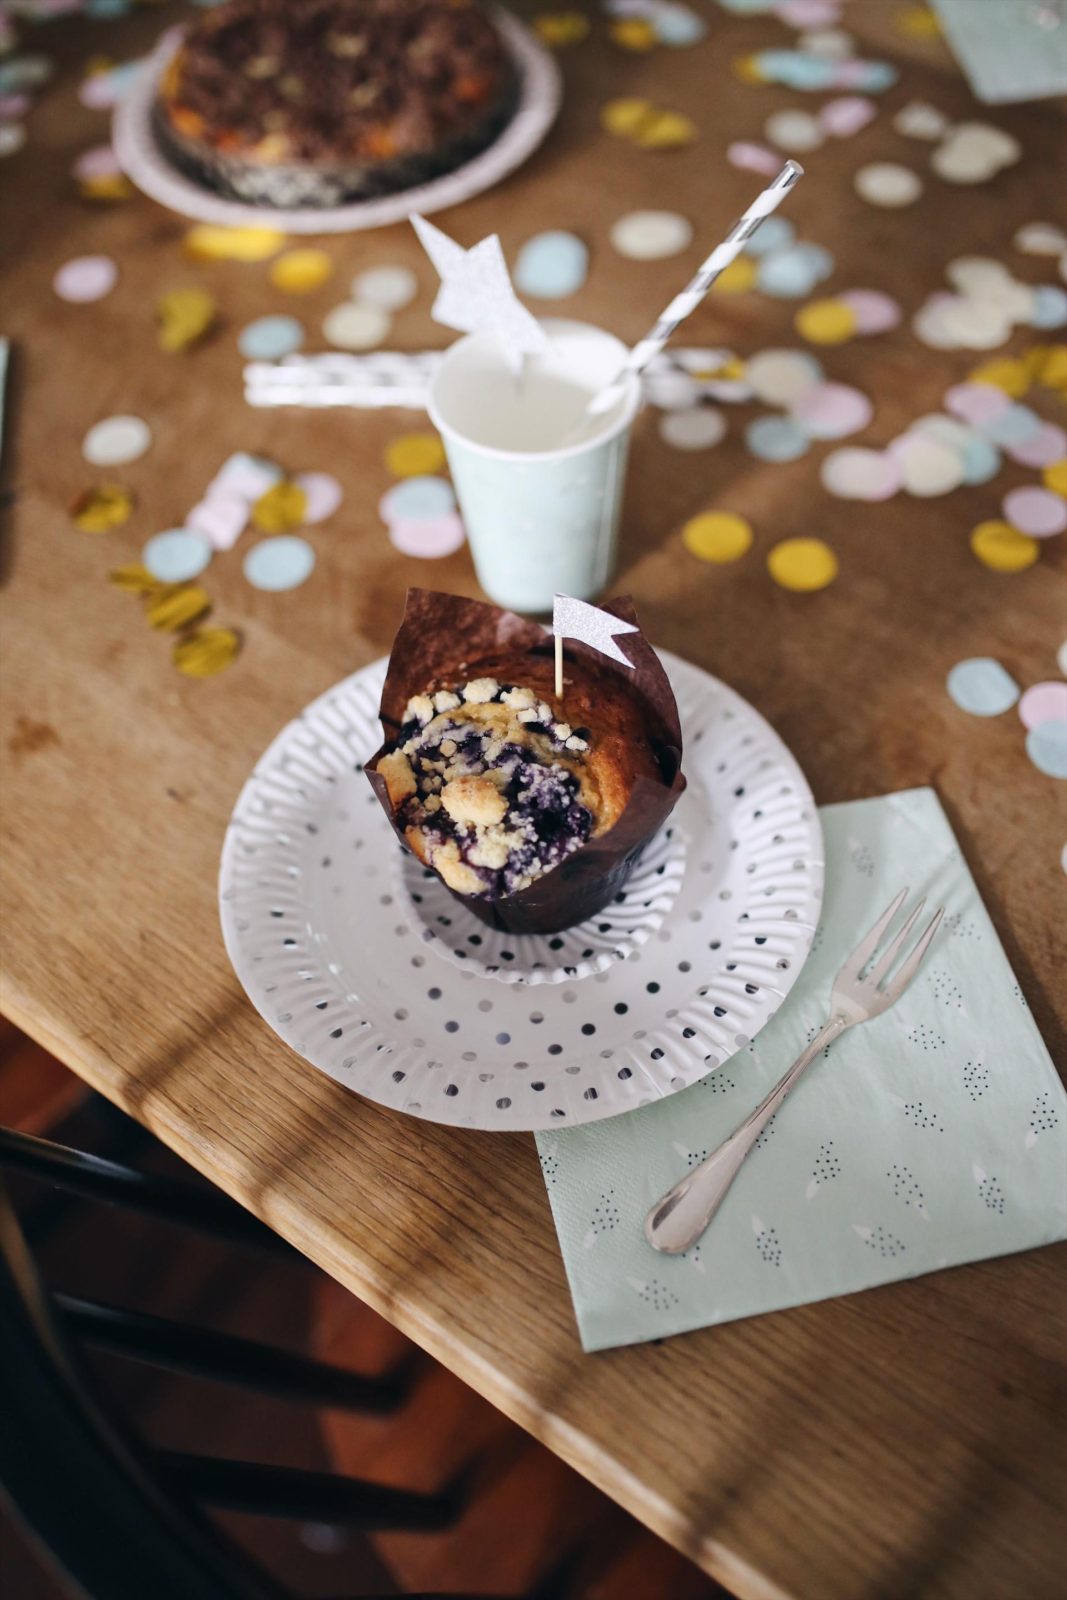 Tipps für einen entspannten Geburtstag mit russischen Zupfkuchen Rezept | #Geburtstagstipps #backende #Geburtstag #Kuchenrezept #russischerzupfkuchen #Geburtstagsideen | Pinspiration.de